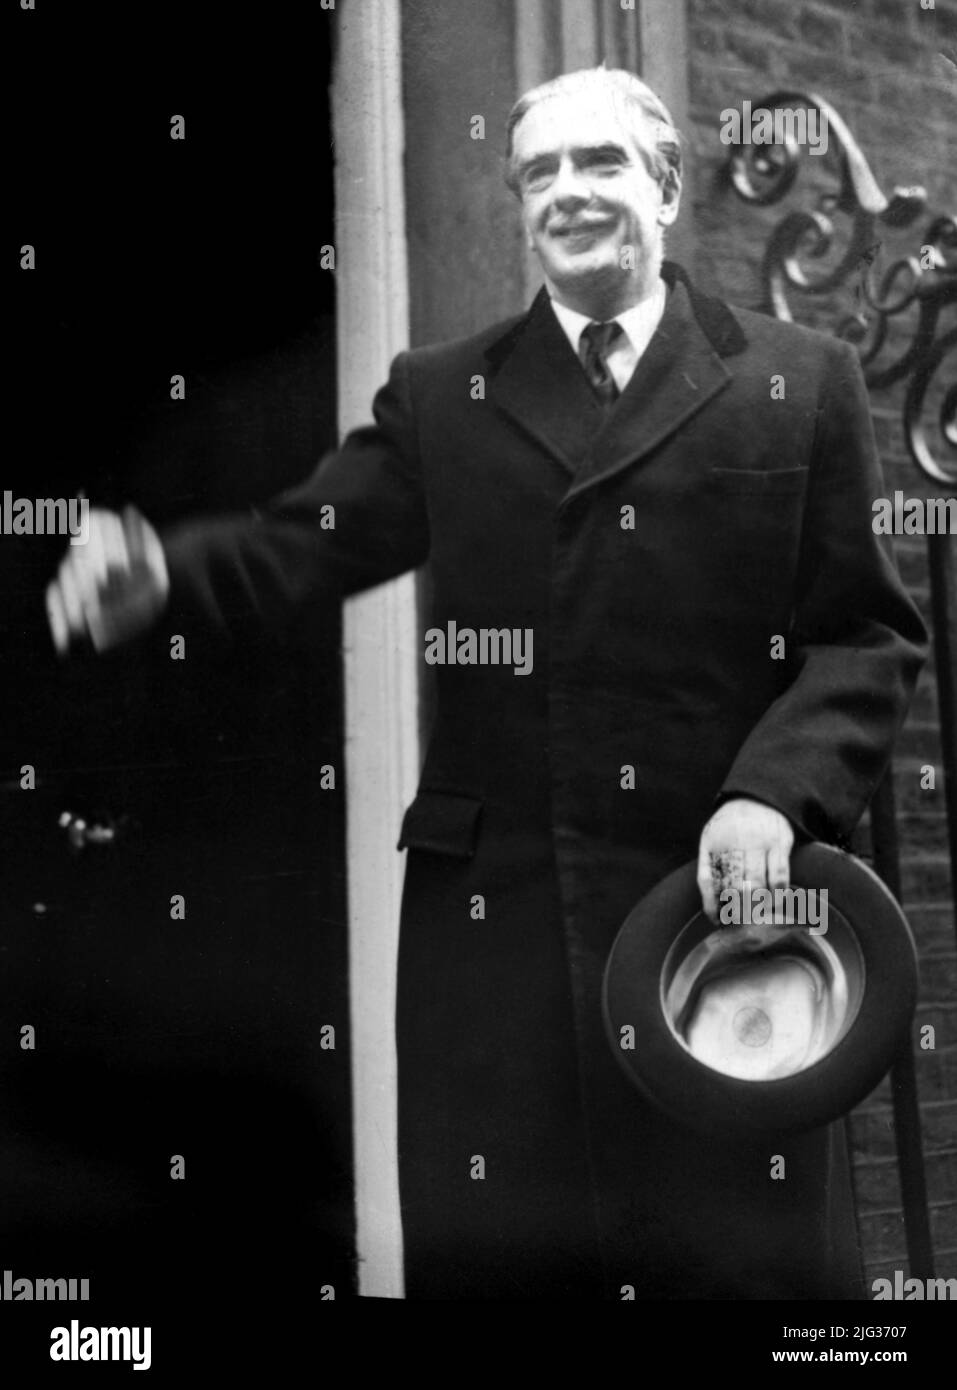 Foto di archivio datata 07/04/55 di Sir Anthony Eden, che ha effettuato la sua prima visita a Downing Street nel 10 come primo Ministro britannico. Boris Johnson ha superato sei primi ministri con il più breve tempo in carica dal 1900: Andrew Bonar Law (211 giorni nel 1922-23), Alec Douglas-Home (364 giorni nel 1963-64), Anthony Eden (644 giorni nel 1955-57), Henry Campbell-Bannerman (852 giorni nel 1905-08), Gordon Brown (1.049 giorni nel 2007-10) e Neville Chamberlain (1.078 giorni nel 1937-40). Data di emissione: Giovedì 7 luglio 2022. Foto Stock